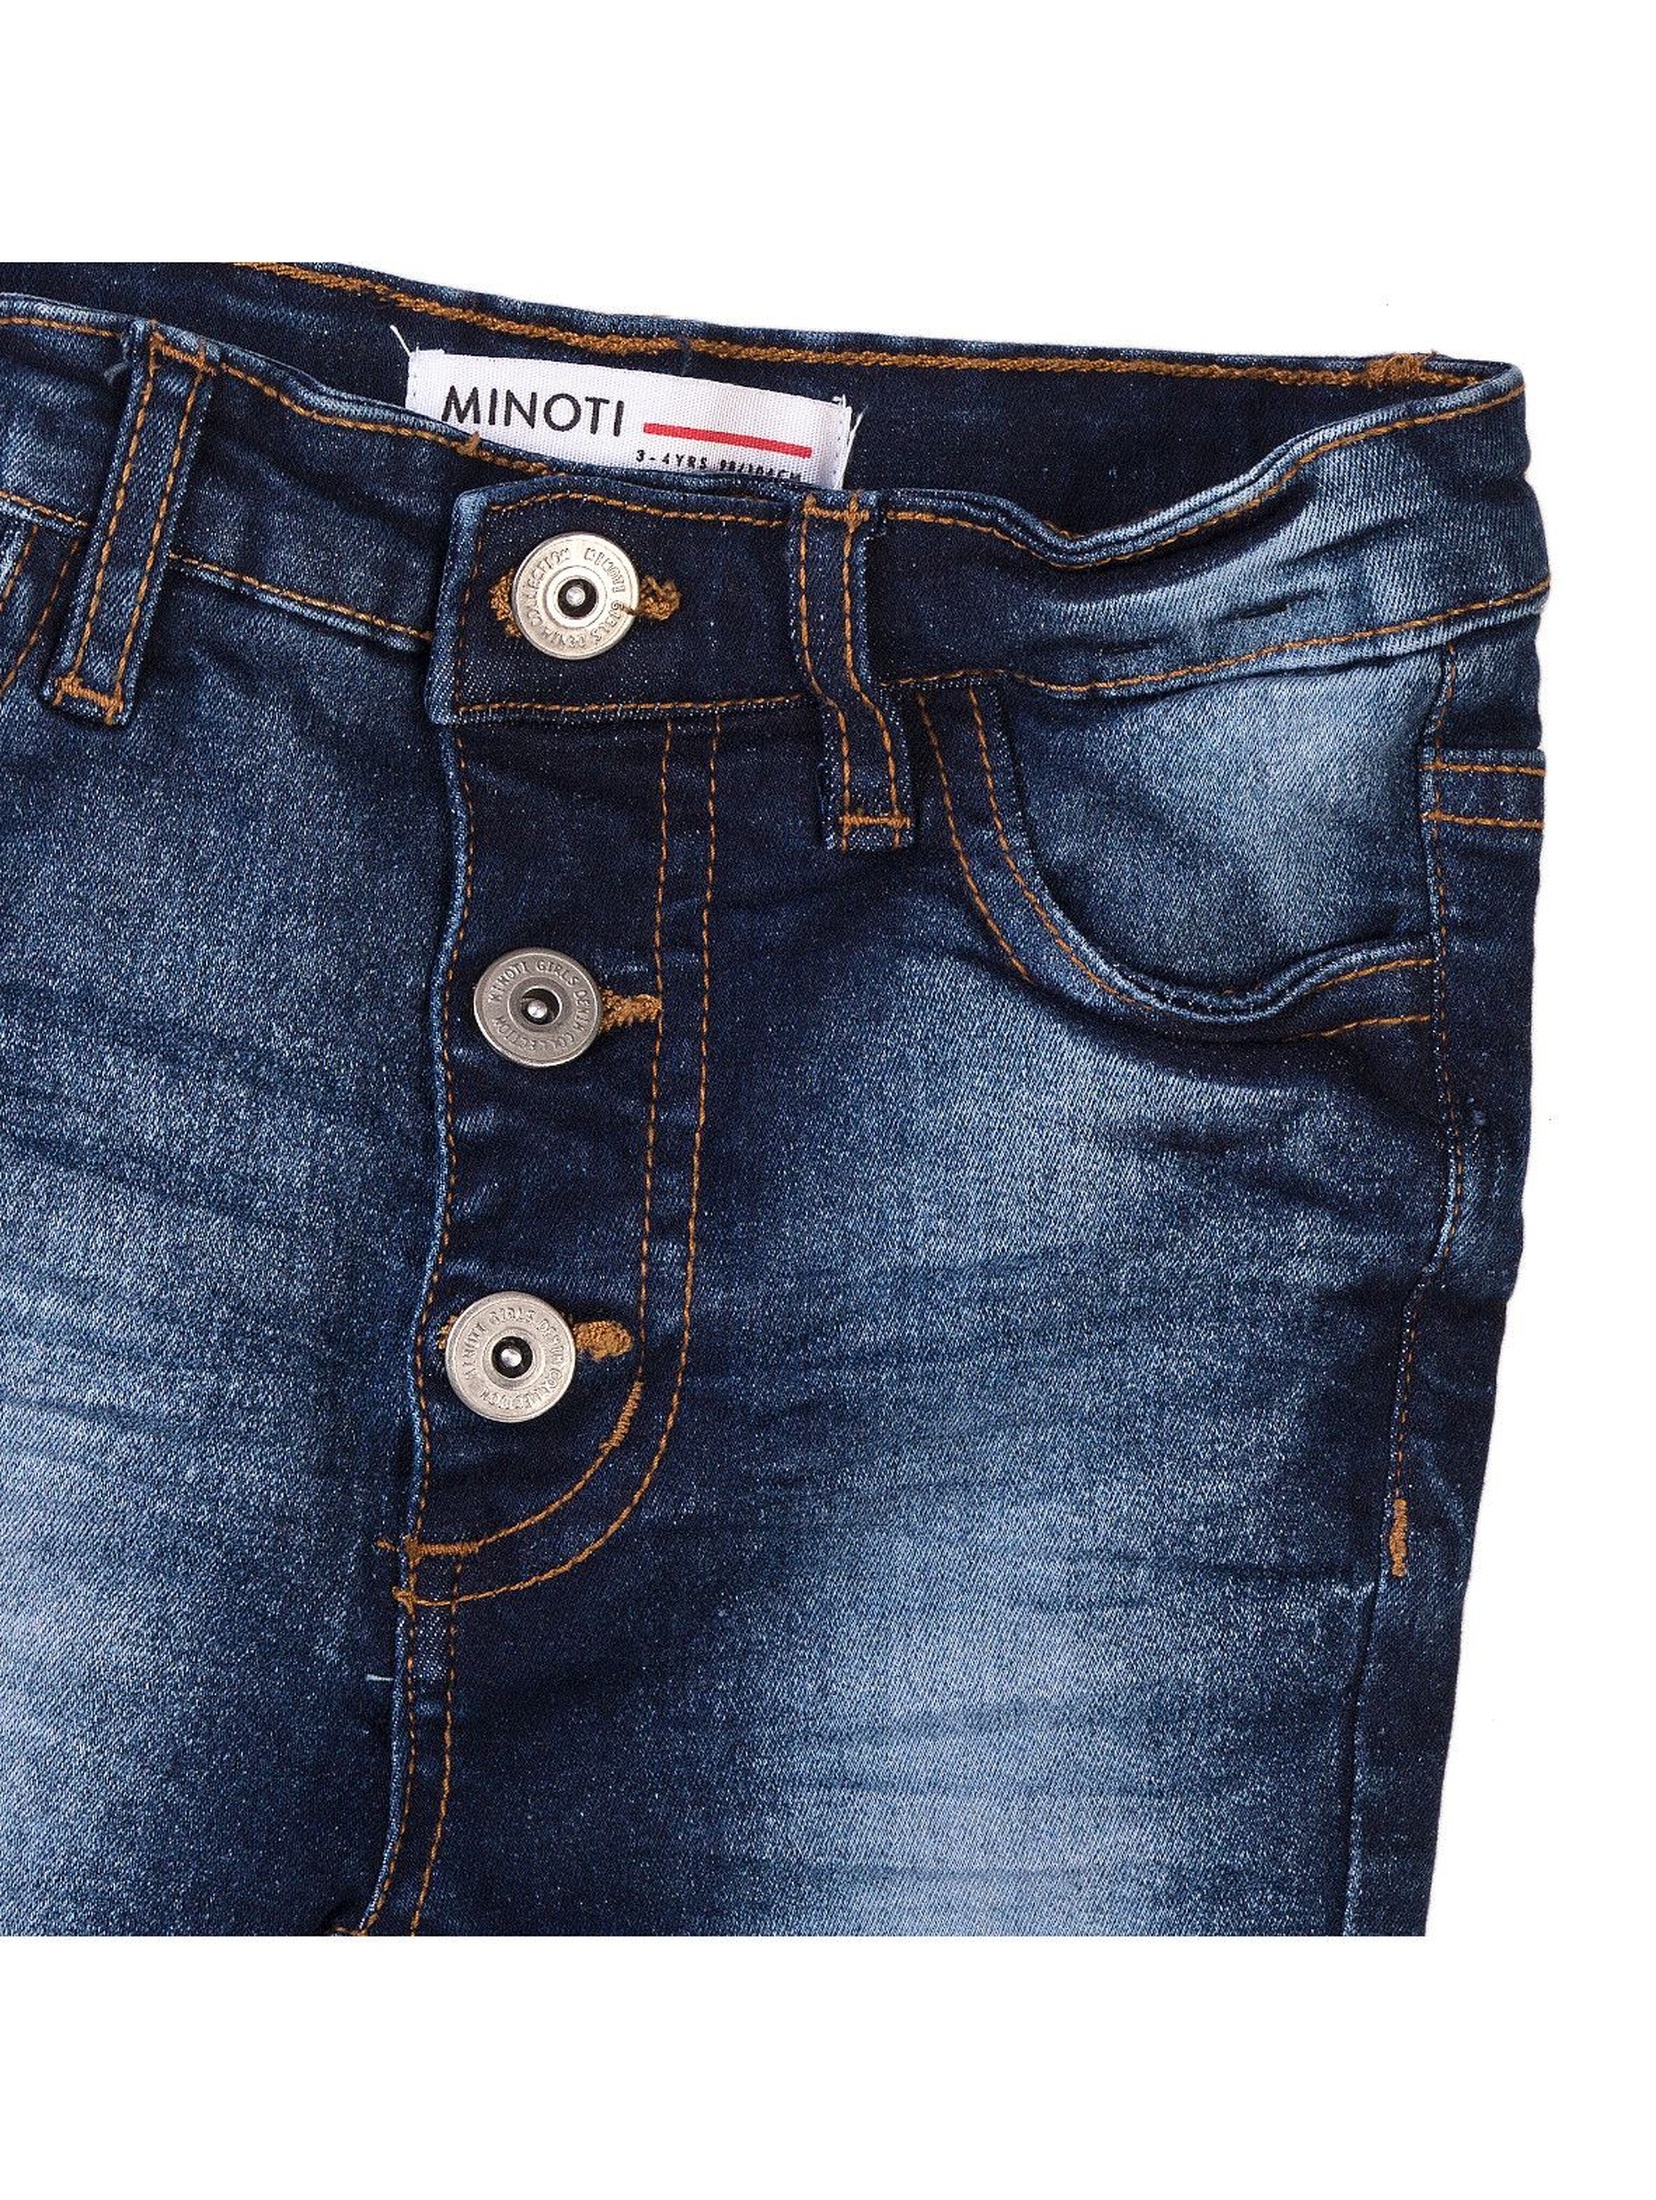 Spodnie dziewczęce jeansowe granatowe